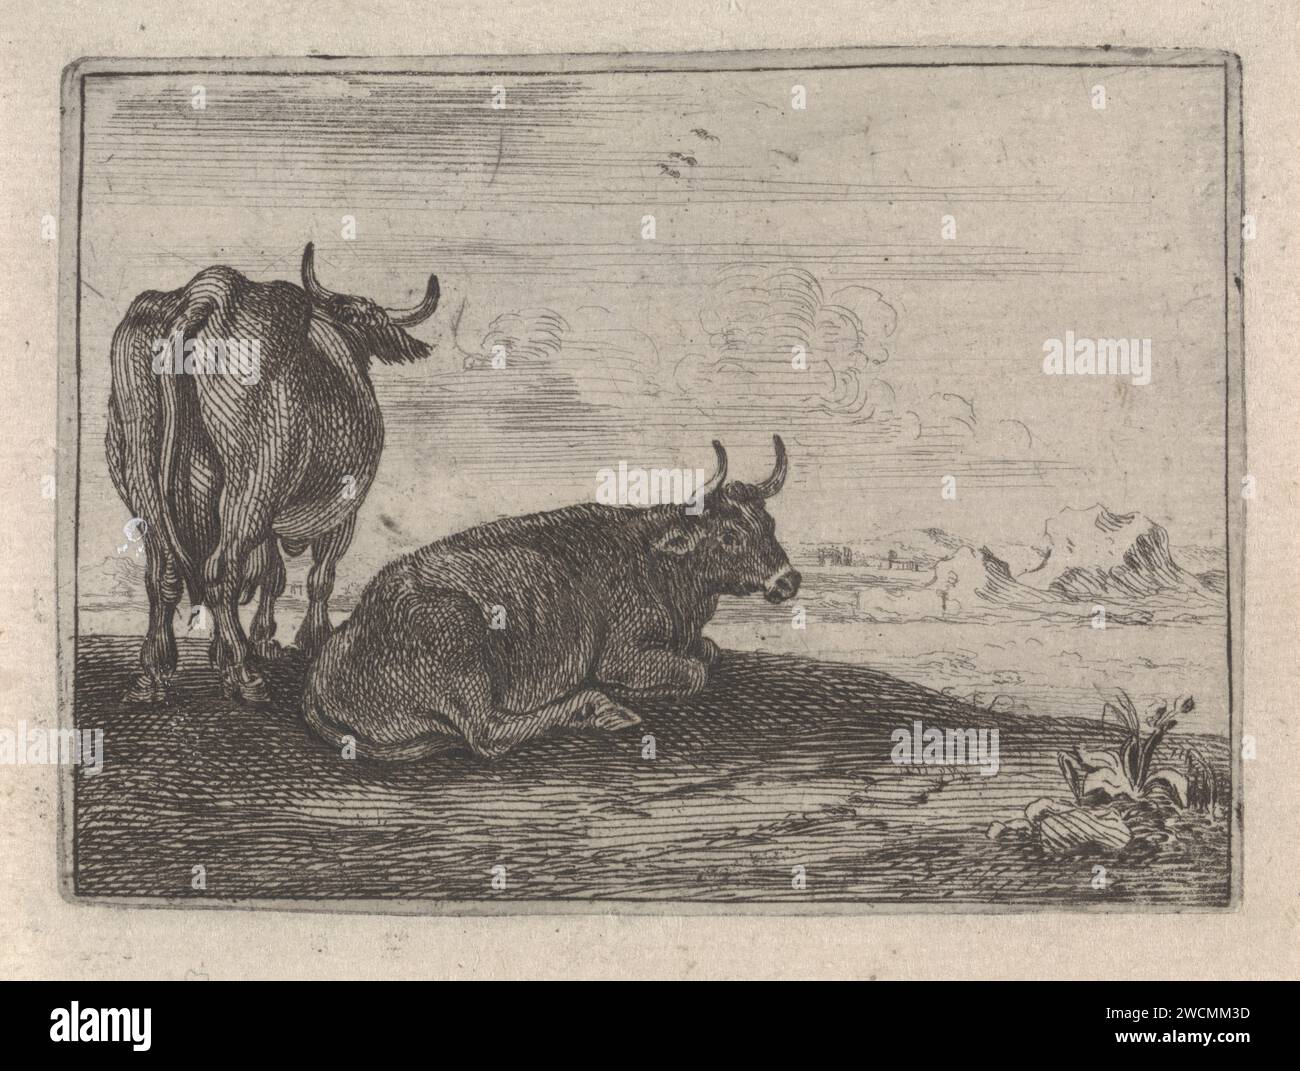 Zwei Kühe in einer Landschaft, Theodorus van Kessel, nach Johannes van den Hecke, 1654 drucken Landschaft mit einer horizontalen und einer stehenden Kuh, beiseite und von hinten gesehen. Berge und Häuser sind im Hintergrund zu sehen. Dieser Druck ist Teil einer zehnteiligen Serie über verschiedene Tiere. Papierätzkuh. Landschaften Stockfoto